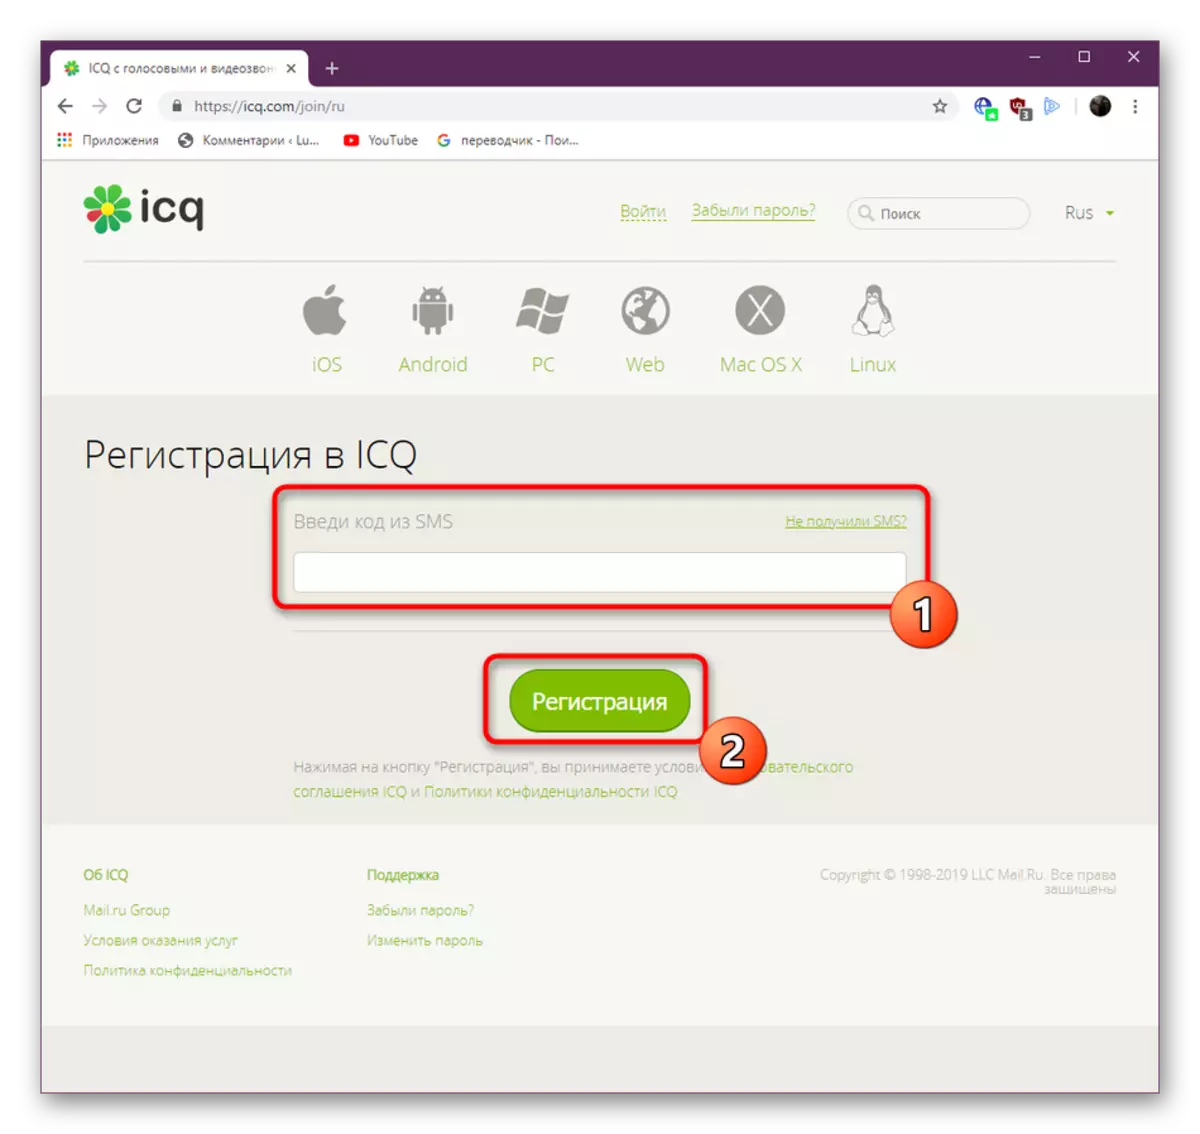 kode ontvang vir registrasie van ICQ op die amptelike webwerf